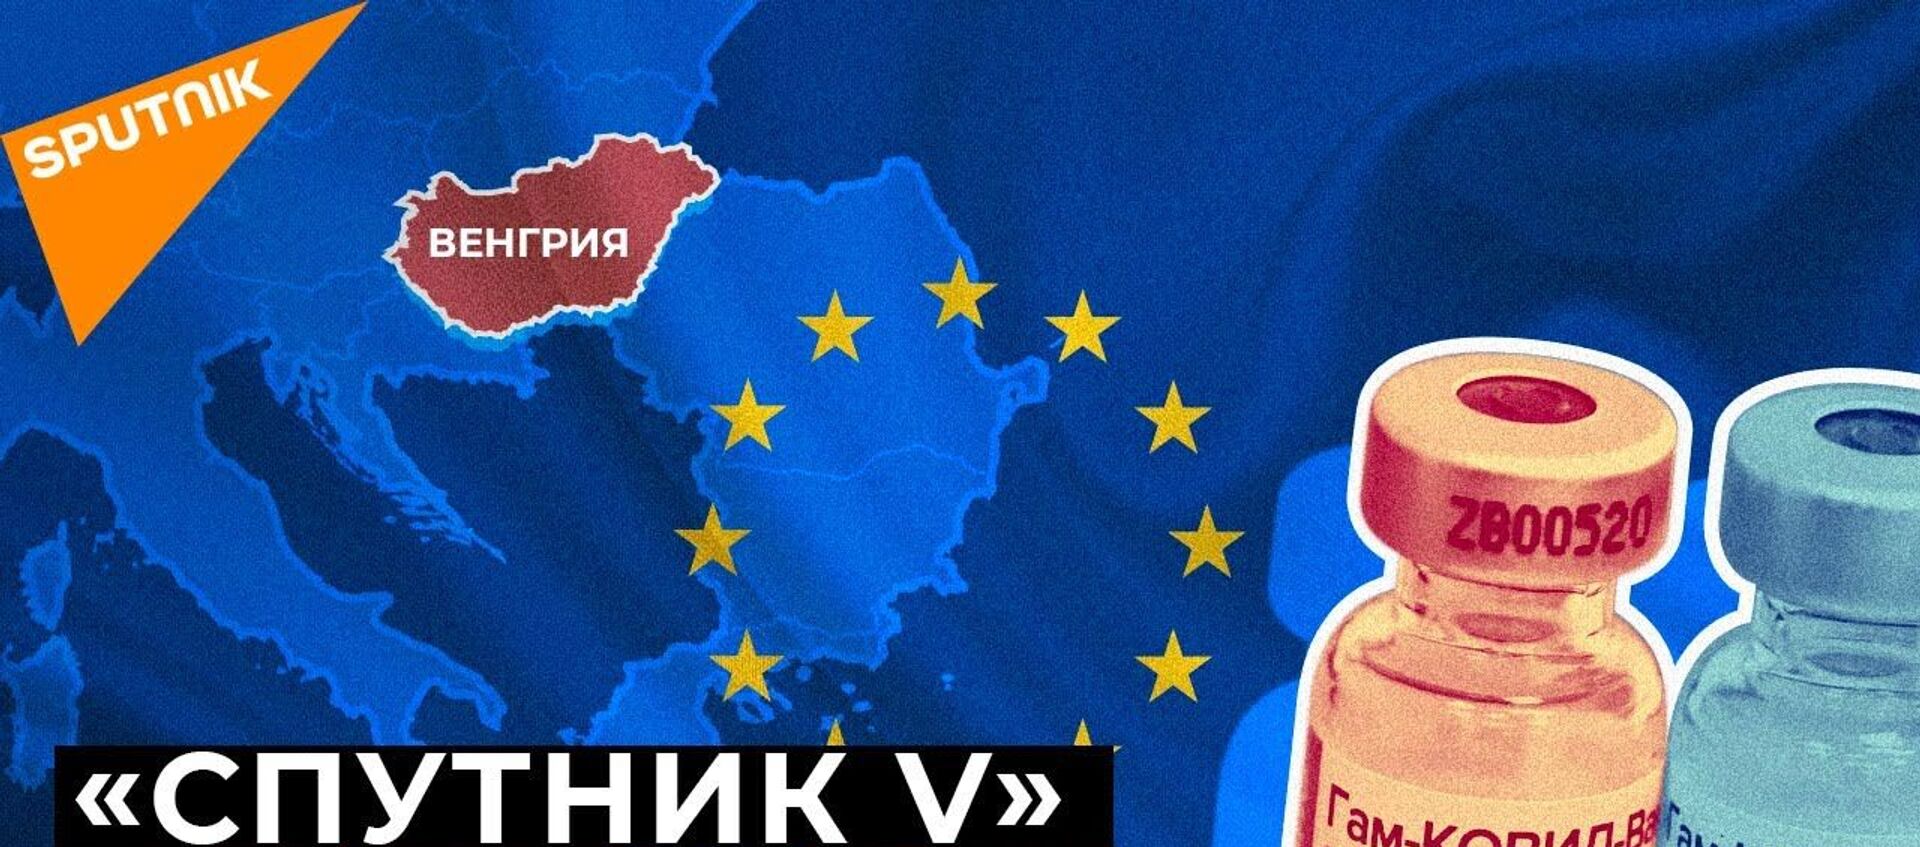 Спутник V в Евросоюзе: Венгрия получит два миллиона доз вакцины - Sputnik Латвия, 1920, 23.01.2021